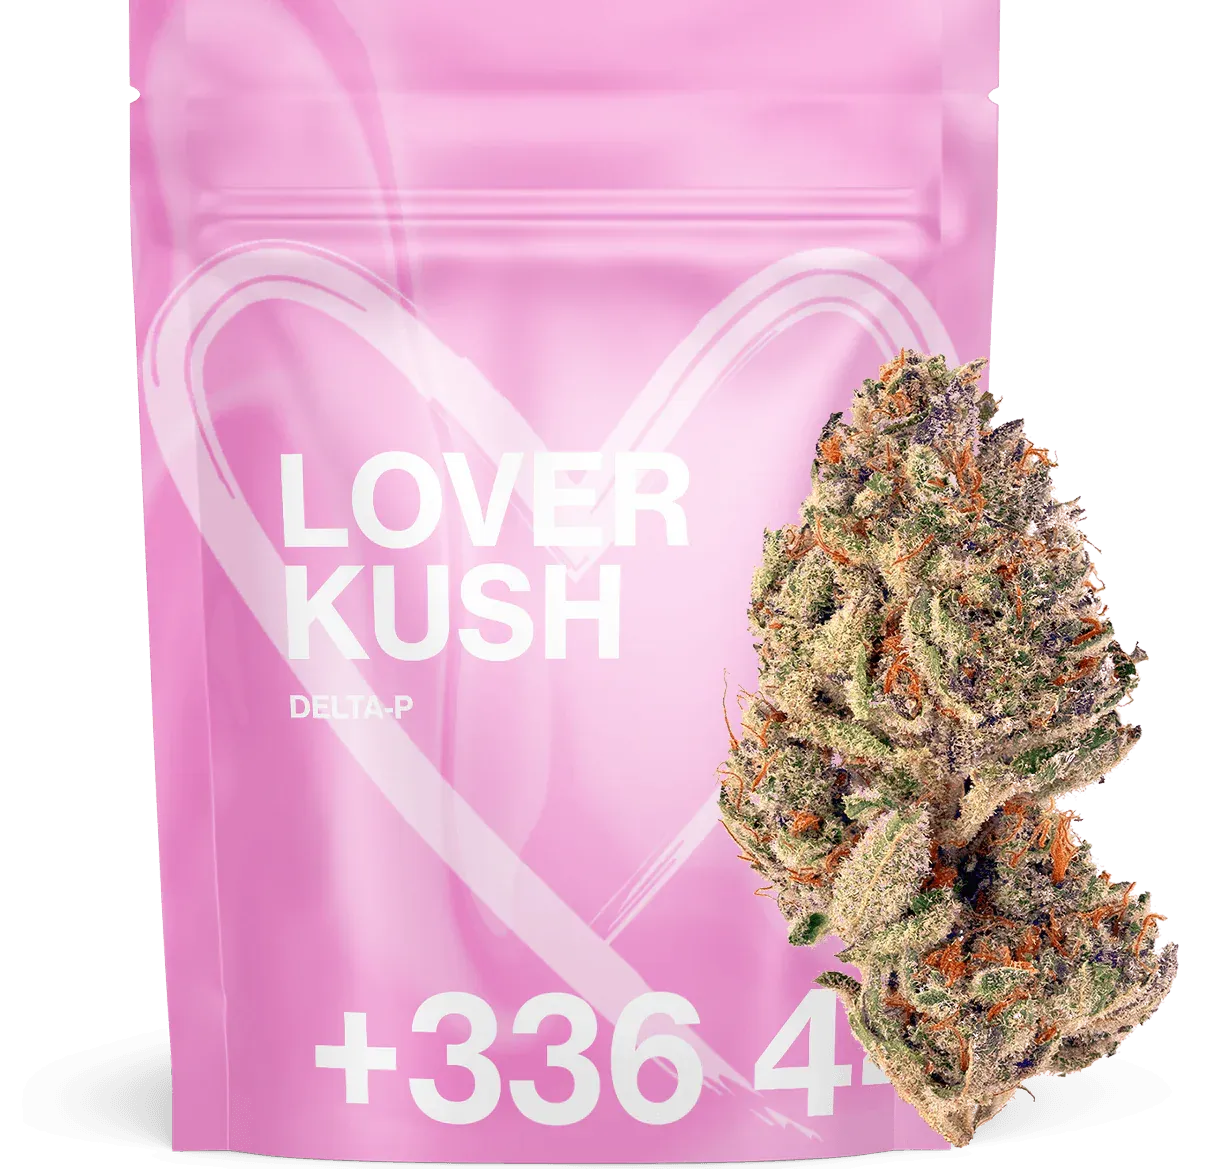 Lover Kush Delta P 25% - Tealer420